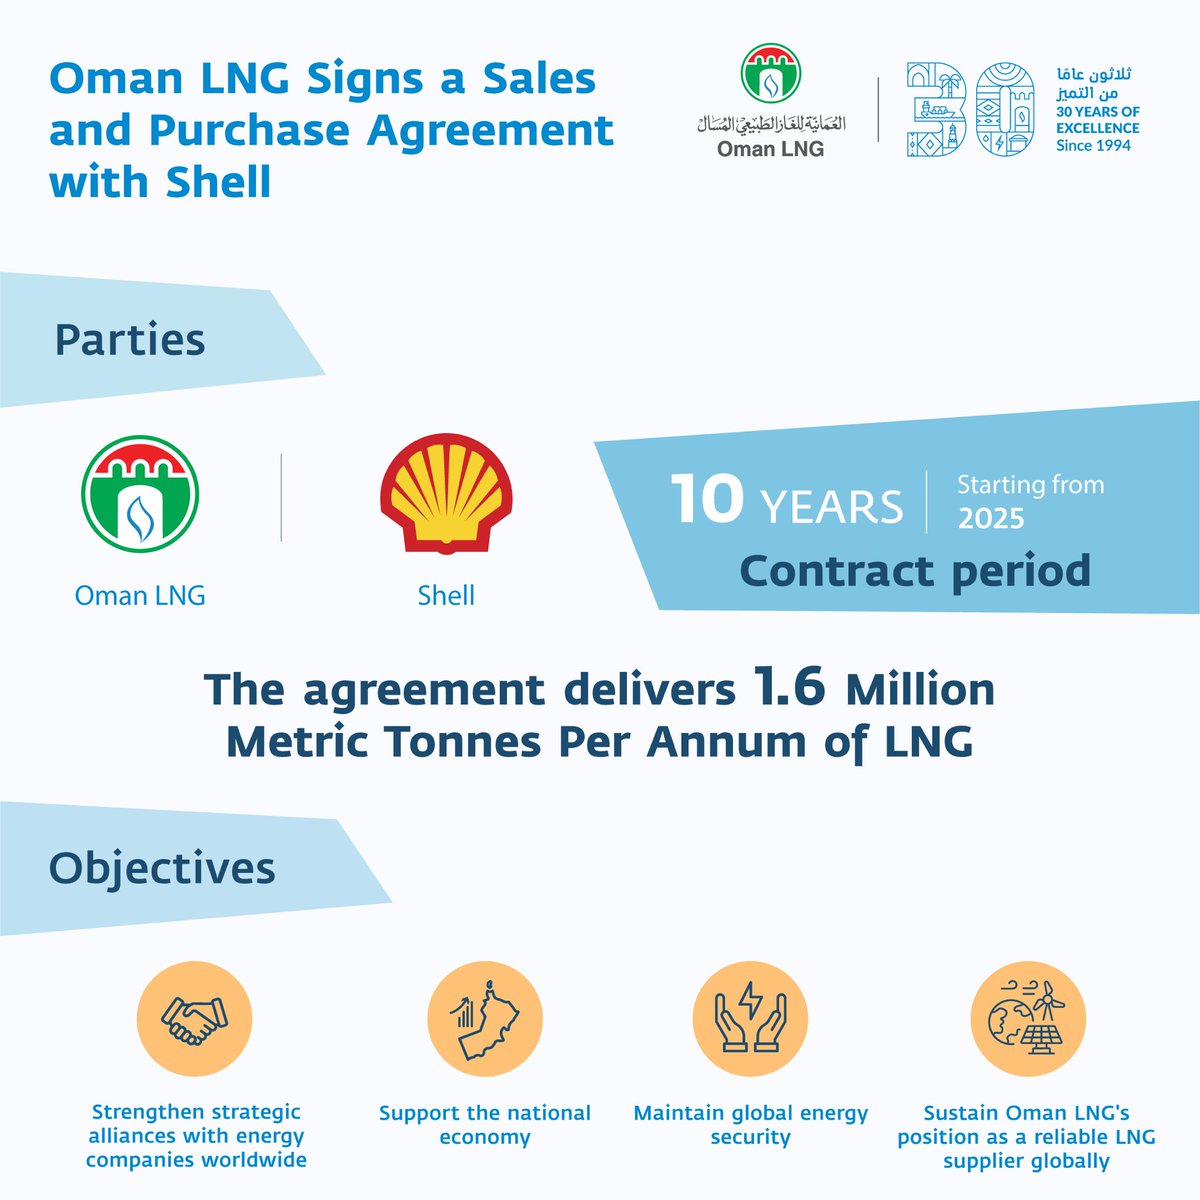 استكمالا لسعينا الحثيث لنكون الأفضل في كل ما نقوم به، وقعت الشركة اتفاقية بيع وشراء مع شركة شل للتجارة الشرق الأوسط لتصدير 1.6 مليون طن متري سنوياً من الغاز الطبيعي المسال. تأتي هذه الخطوة لتعزز من مكانة الشركة كمورد معتمد للطاقة عالمياً ولدعم الناتج المحلي. Oman LNG has…